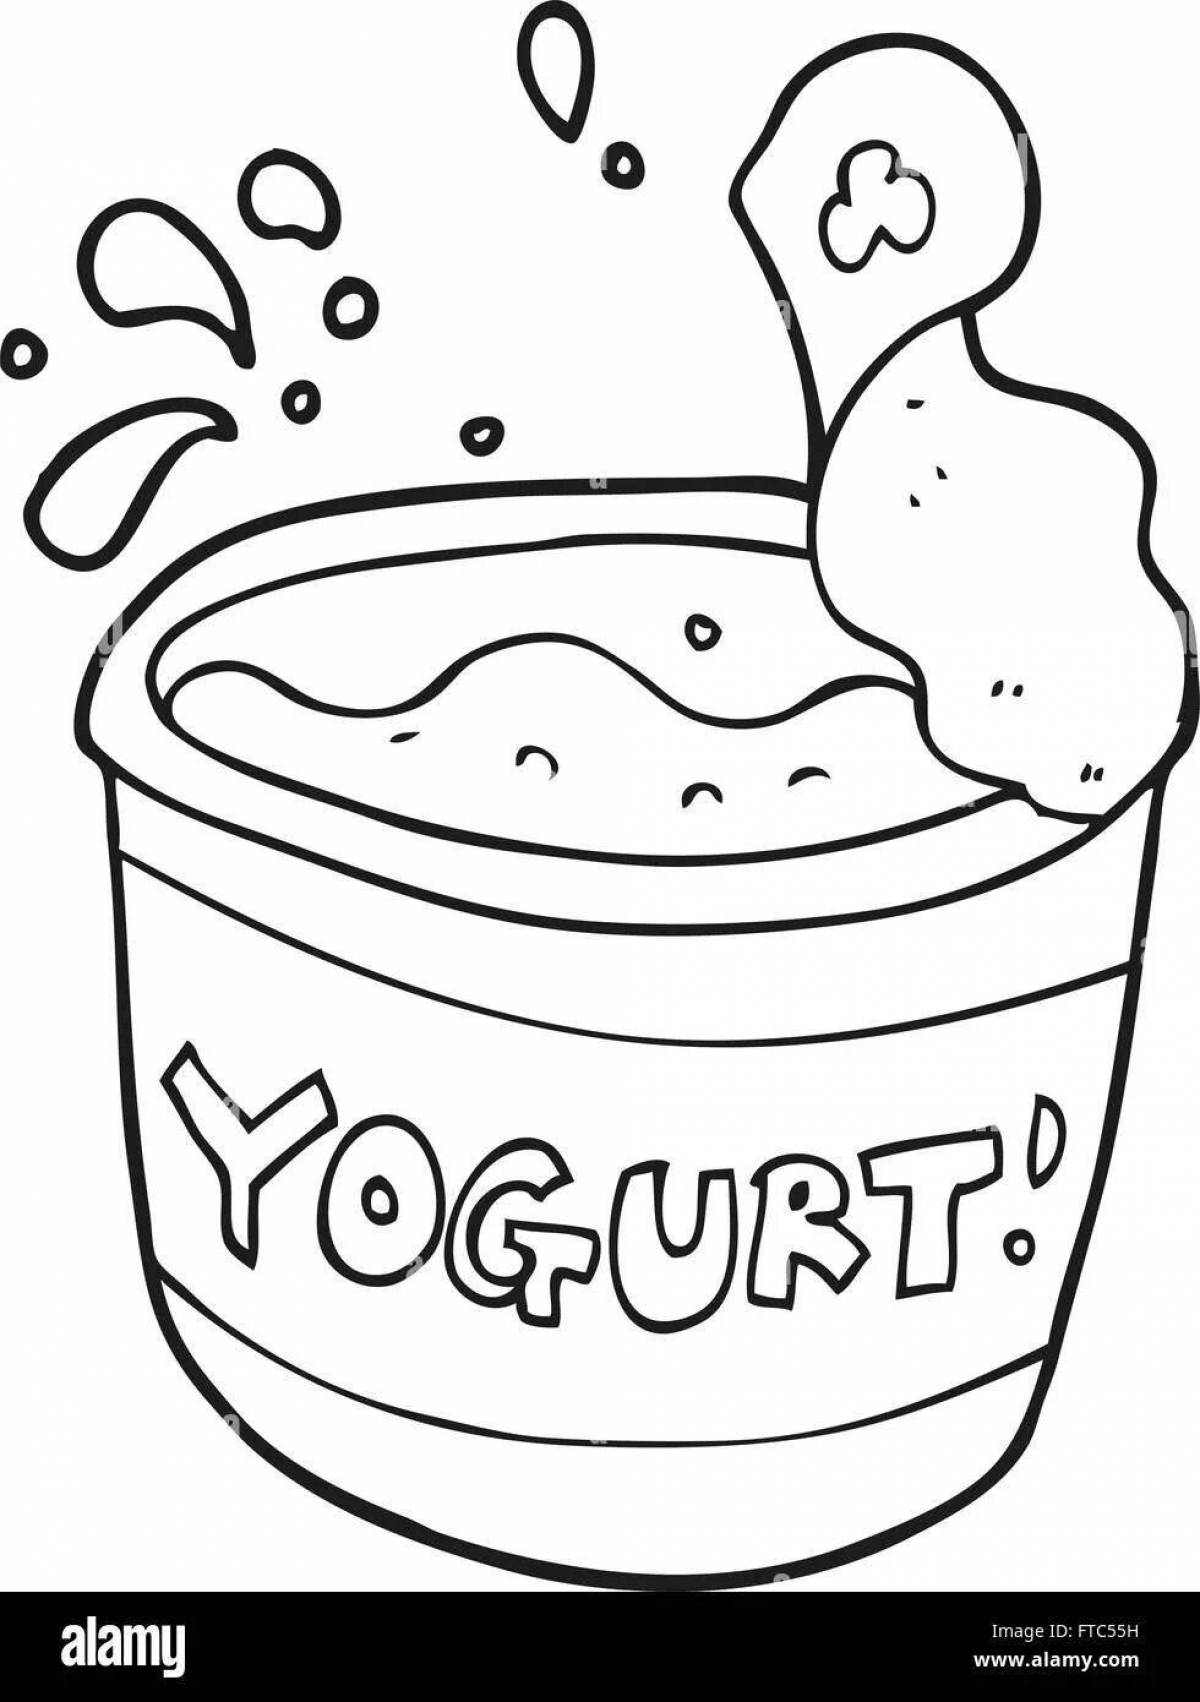 Fun yogurt coloring book for kids